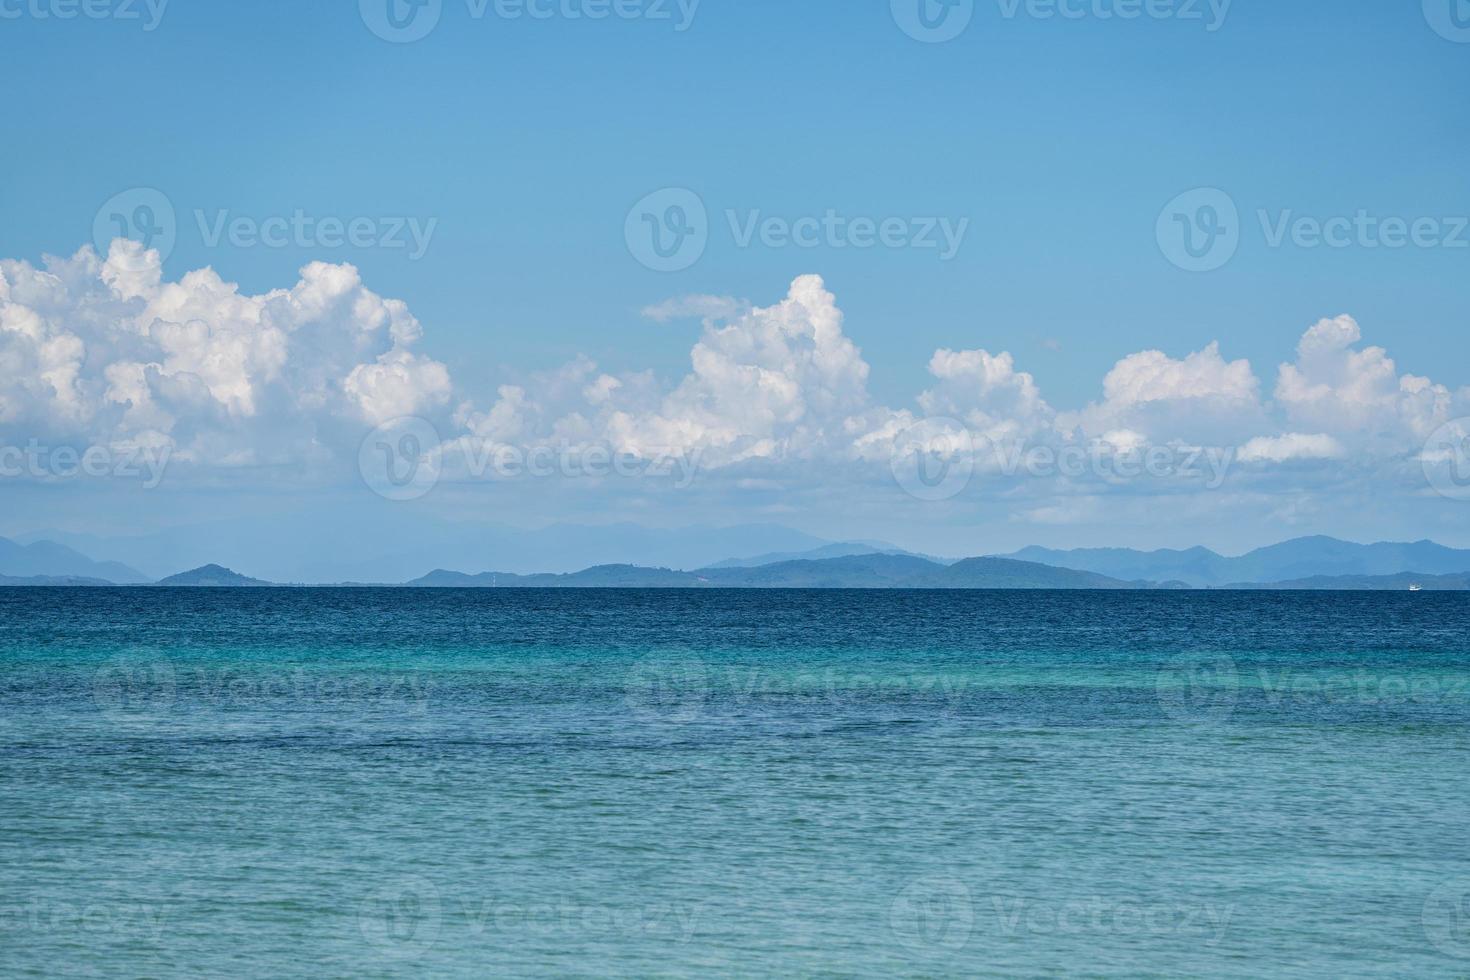 die umgebung der insel munnok, östlich der insel thailand., sehr schöner offener himmel, wolke, meer und strand. foto